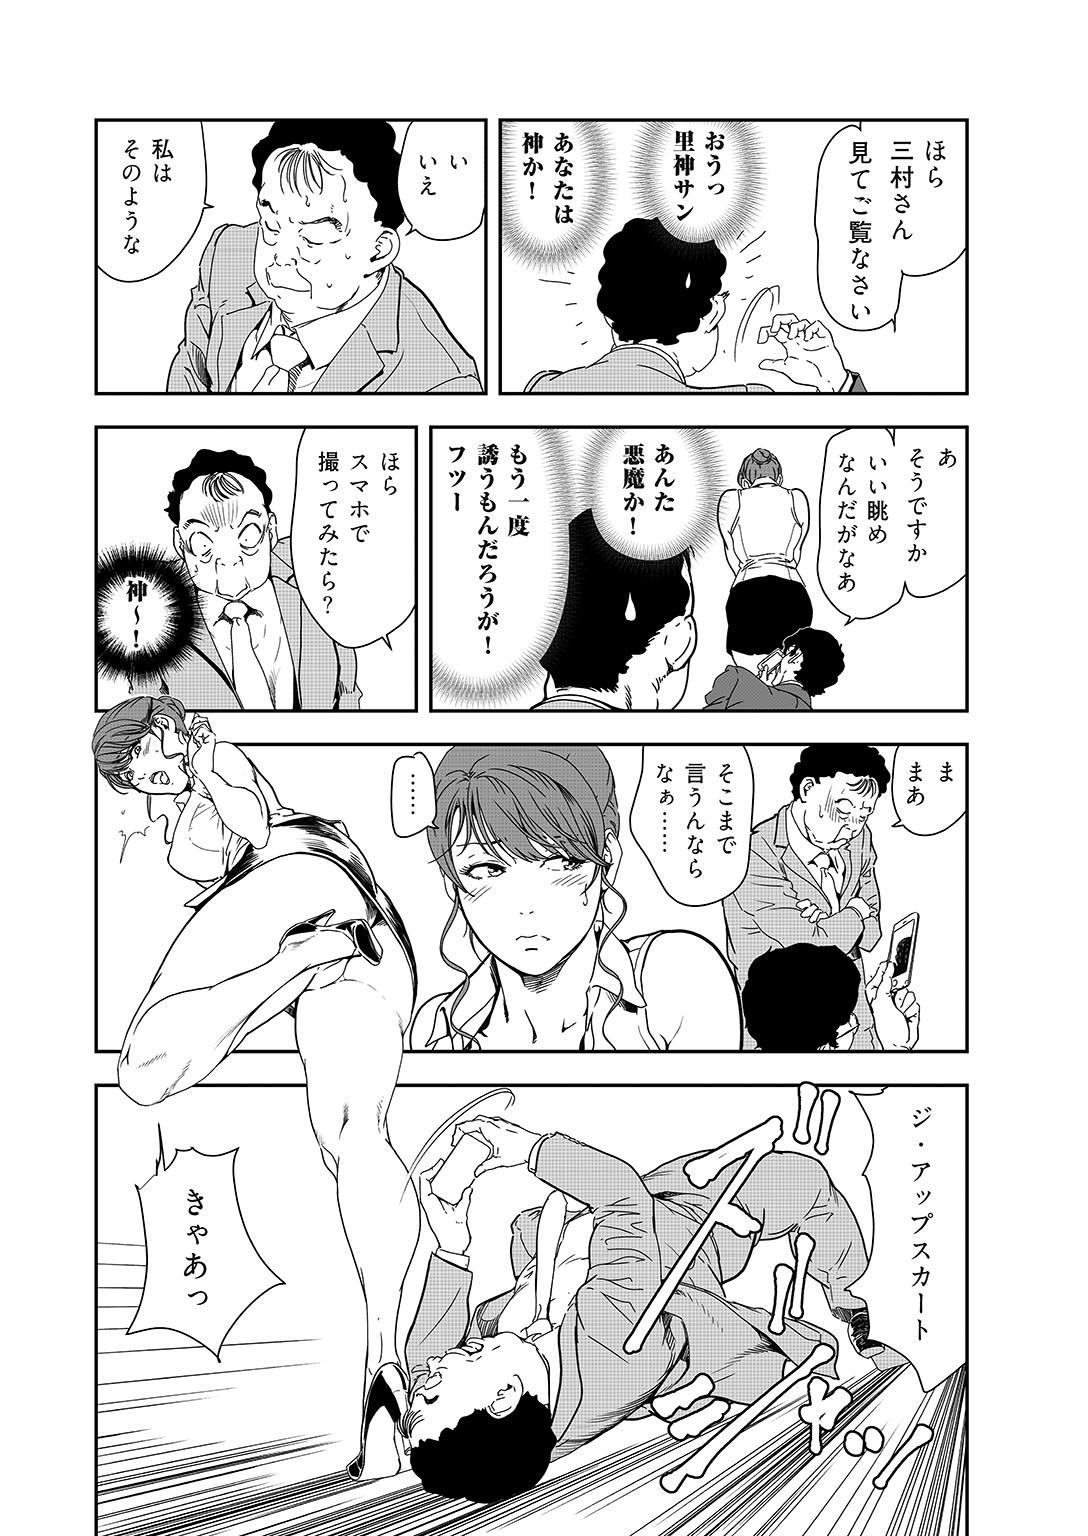 Sextoy Nikuhisyo Yukiko 38 Blow Jobs - Page 11